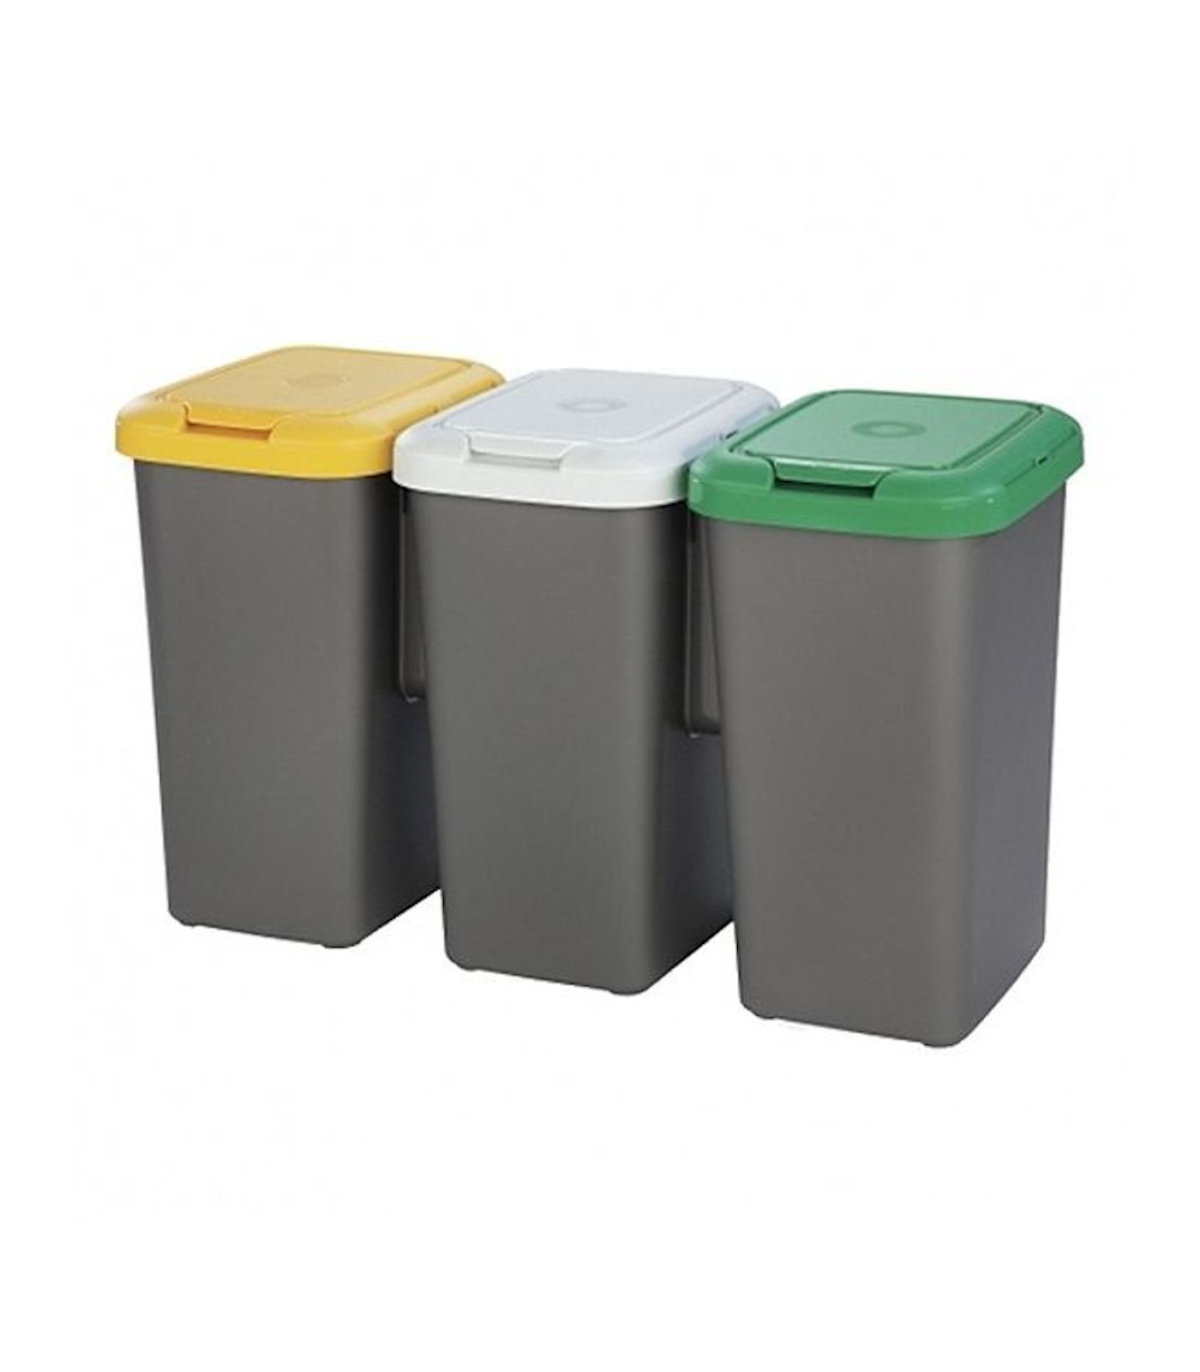 Papeleras y cubos de reciclaje